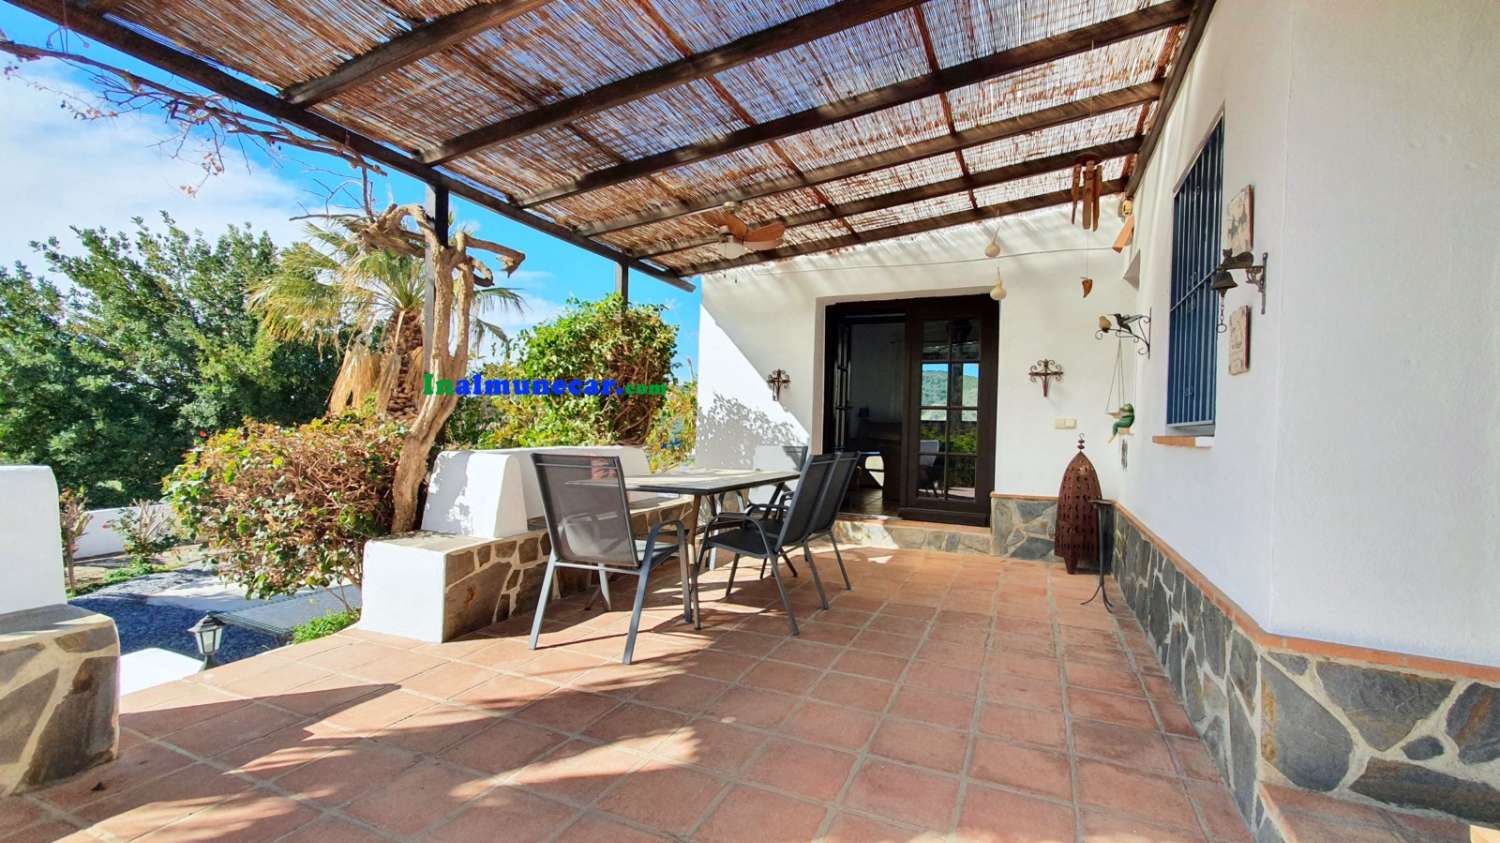 Country villa for sale located in the Bay of La Herradura, Andalusia.